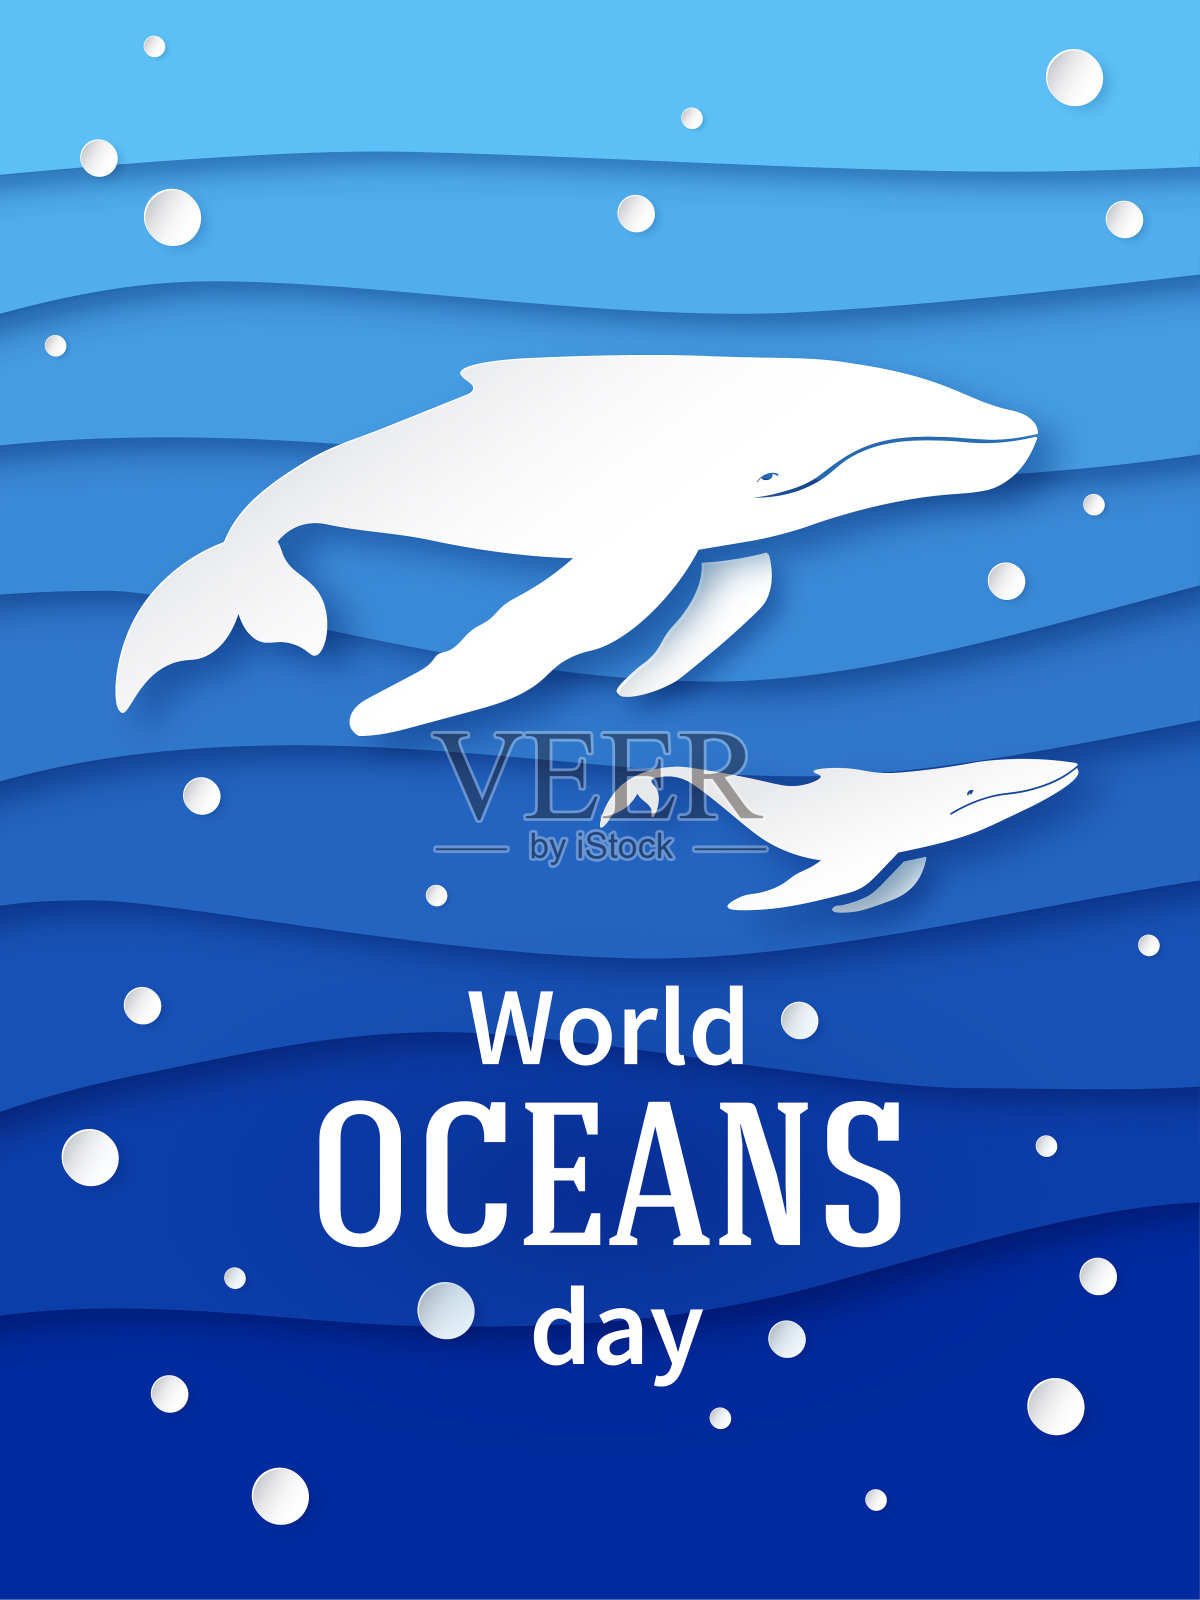 6月8日海洋日。纸张风格的假日海报设计。带幼崽的座头鲸。分层的邀请。向量插画图片素材